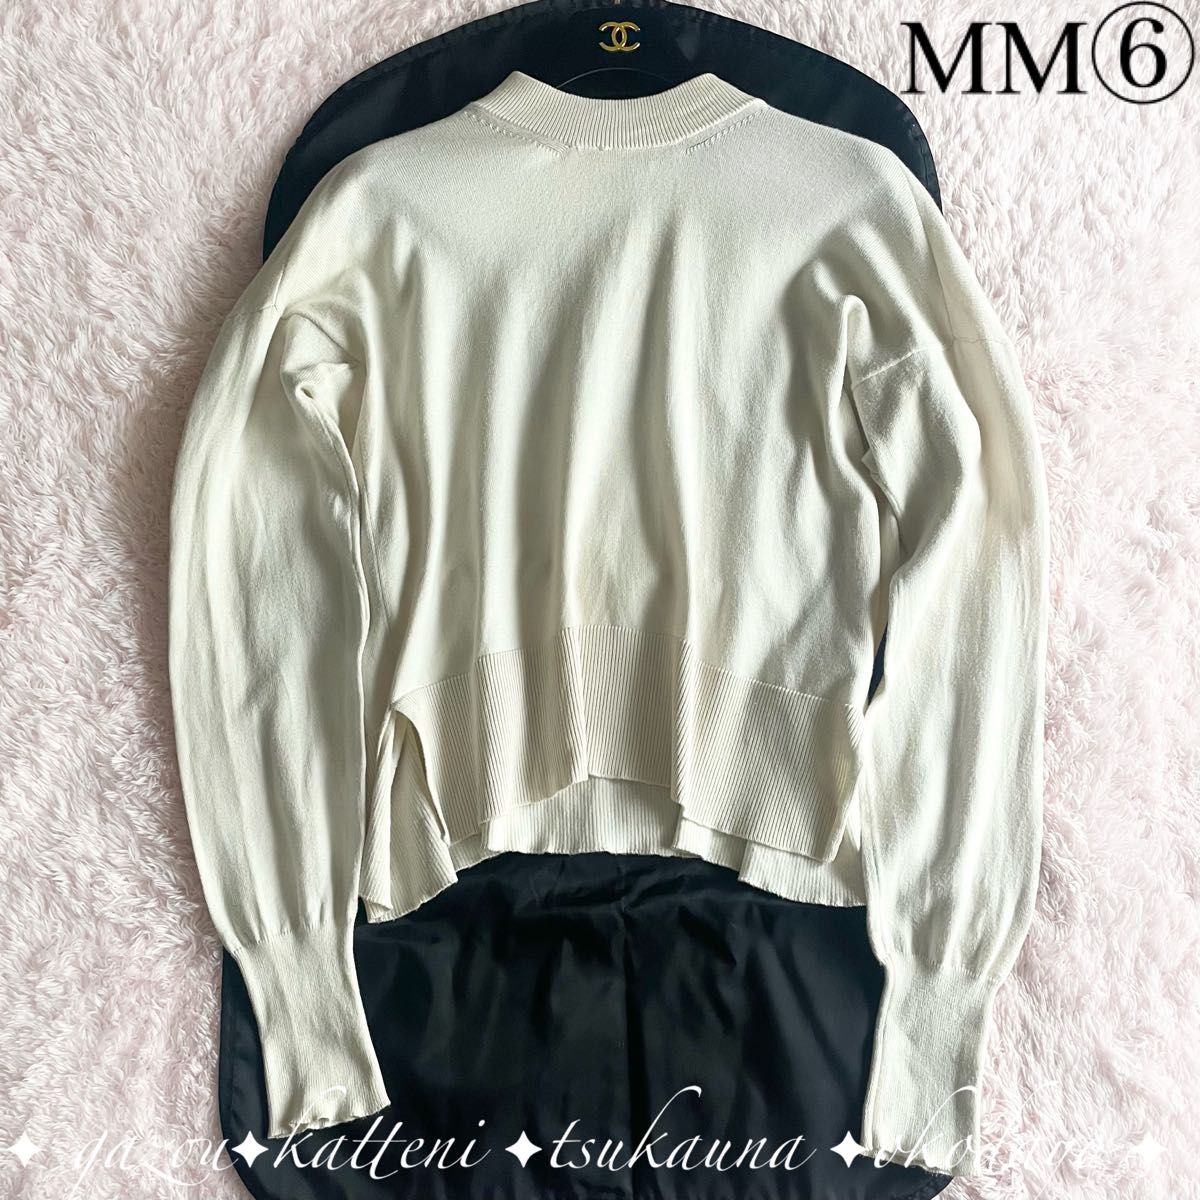 Maison Margiela メゾンマルジェラ MM6 コットン ニット セーター リブ